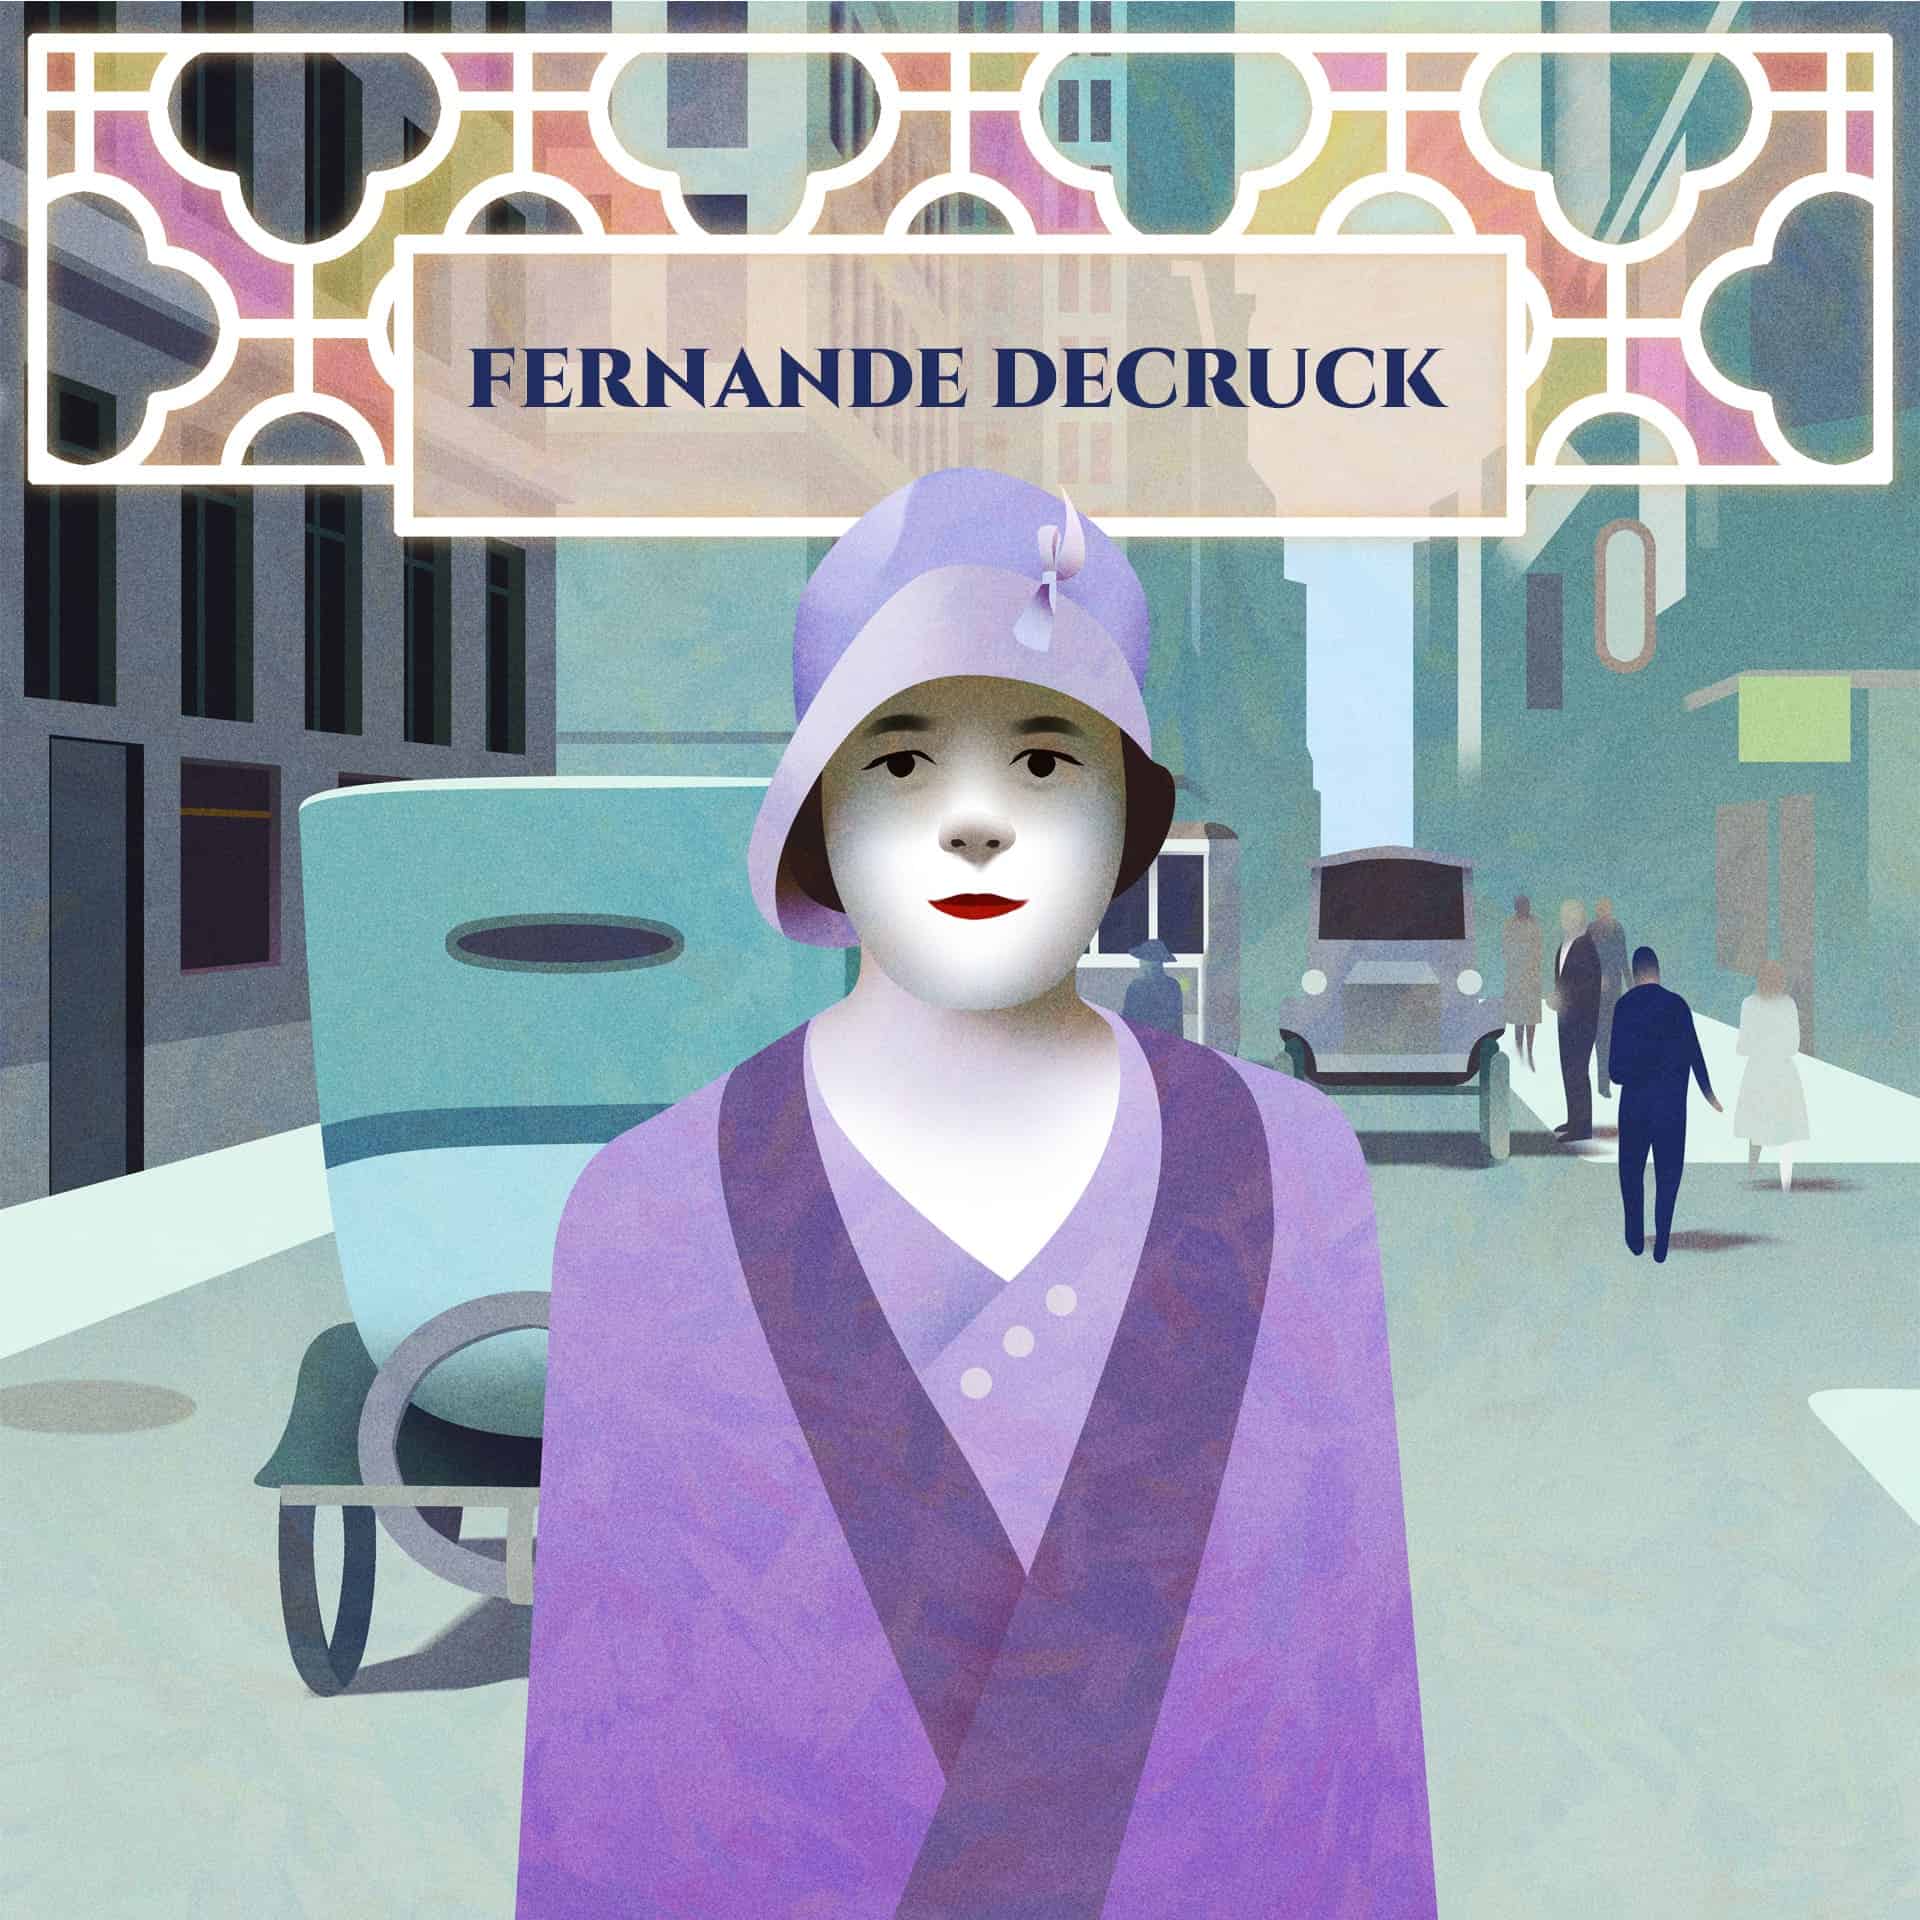 Fernande Decruck